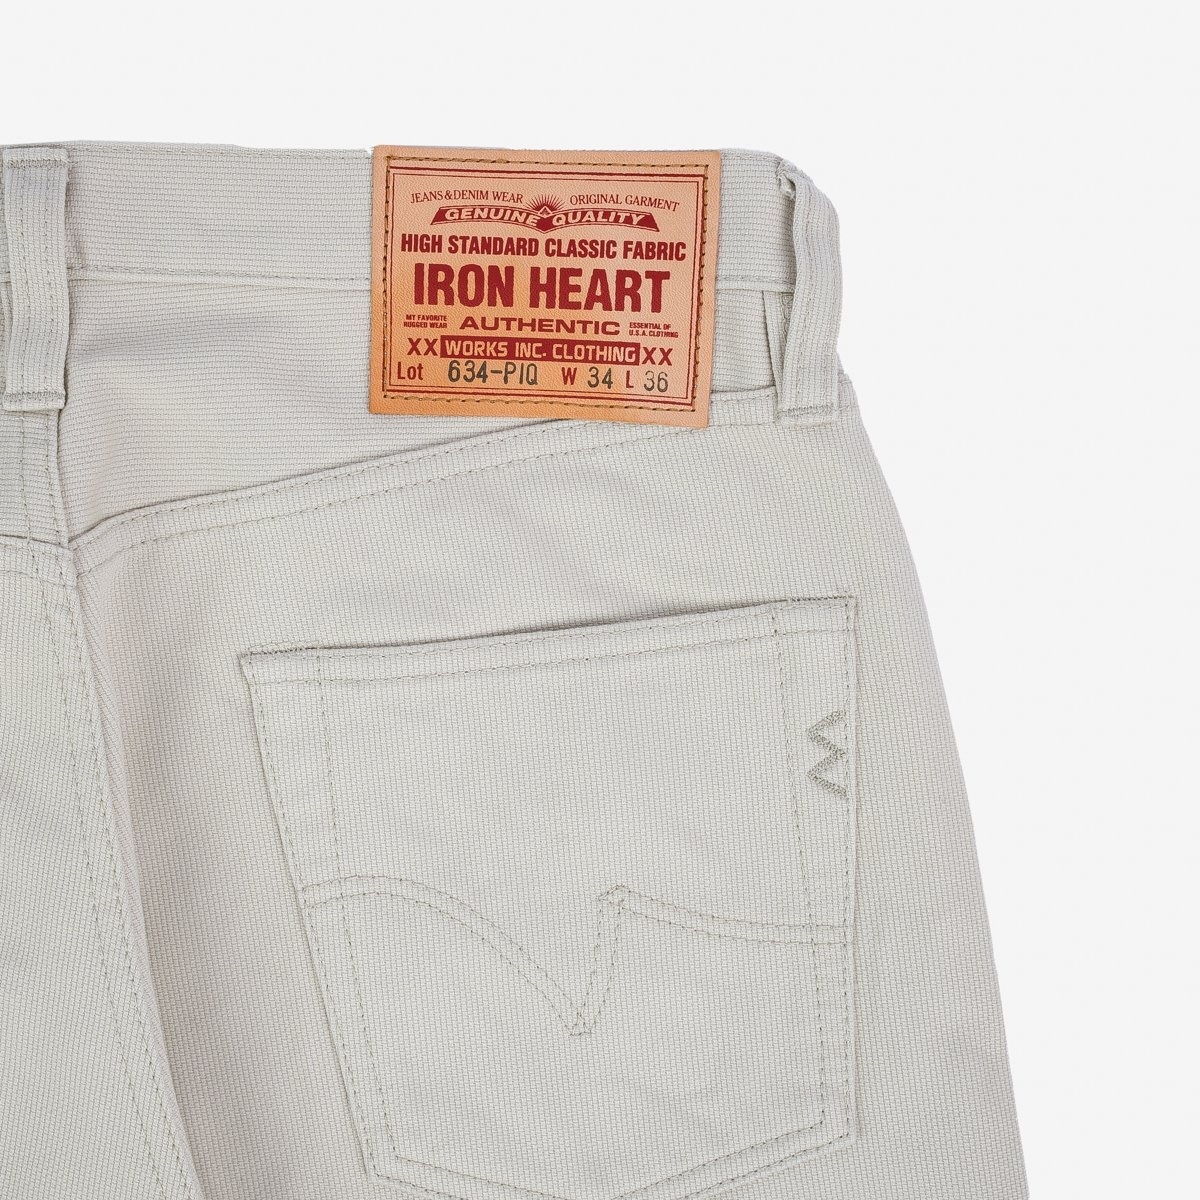 IH-634-PIQ 14oz Cotton Piqué Straight Cut Jeans - Ecru - 15